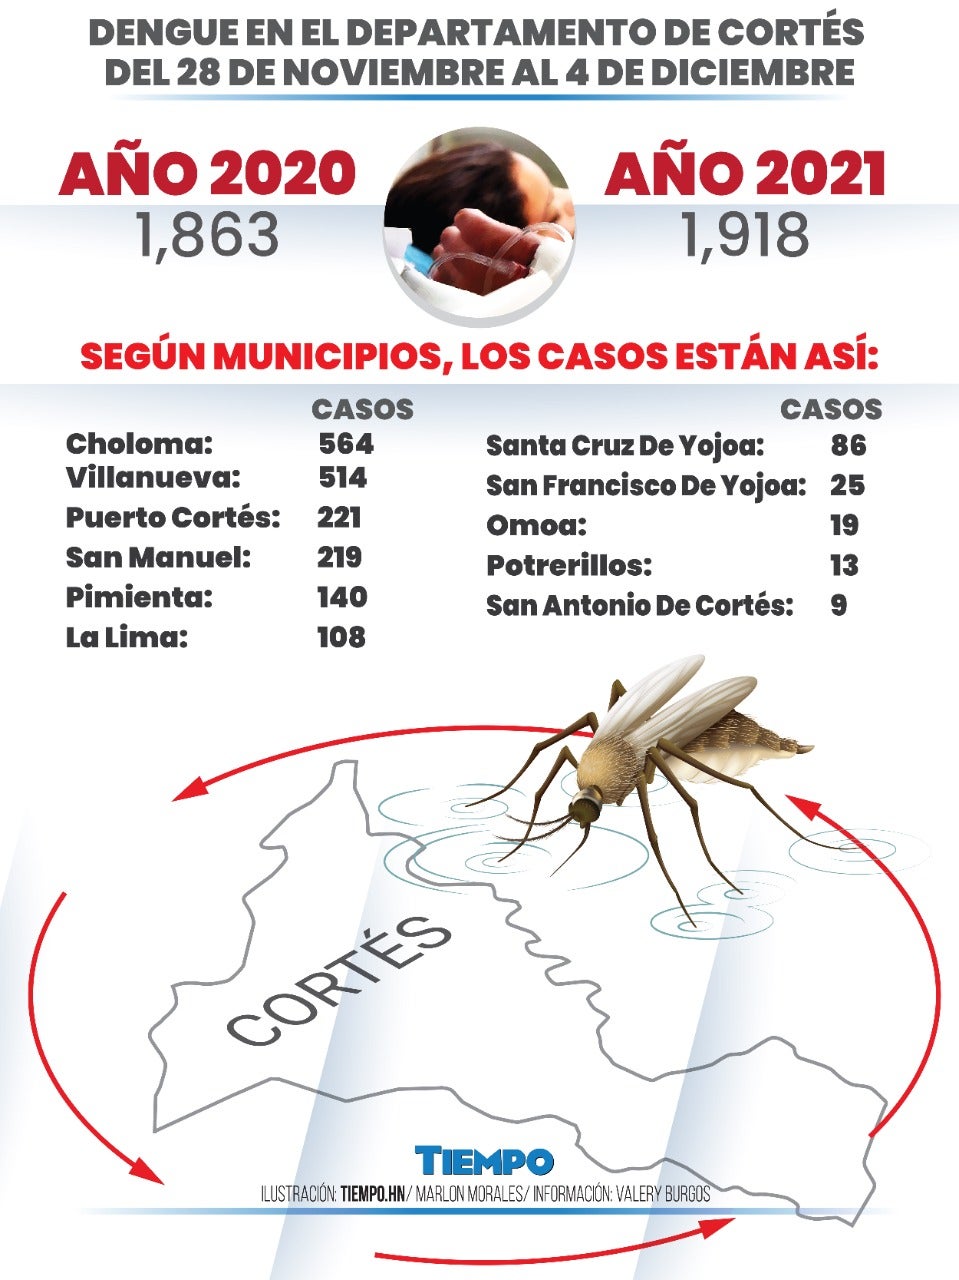 Detalles del dengue en Cortés.